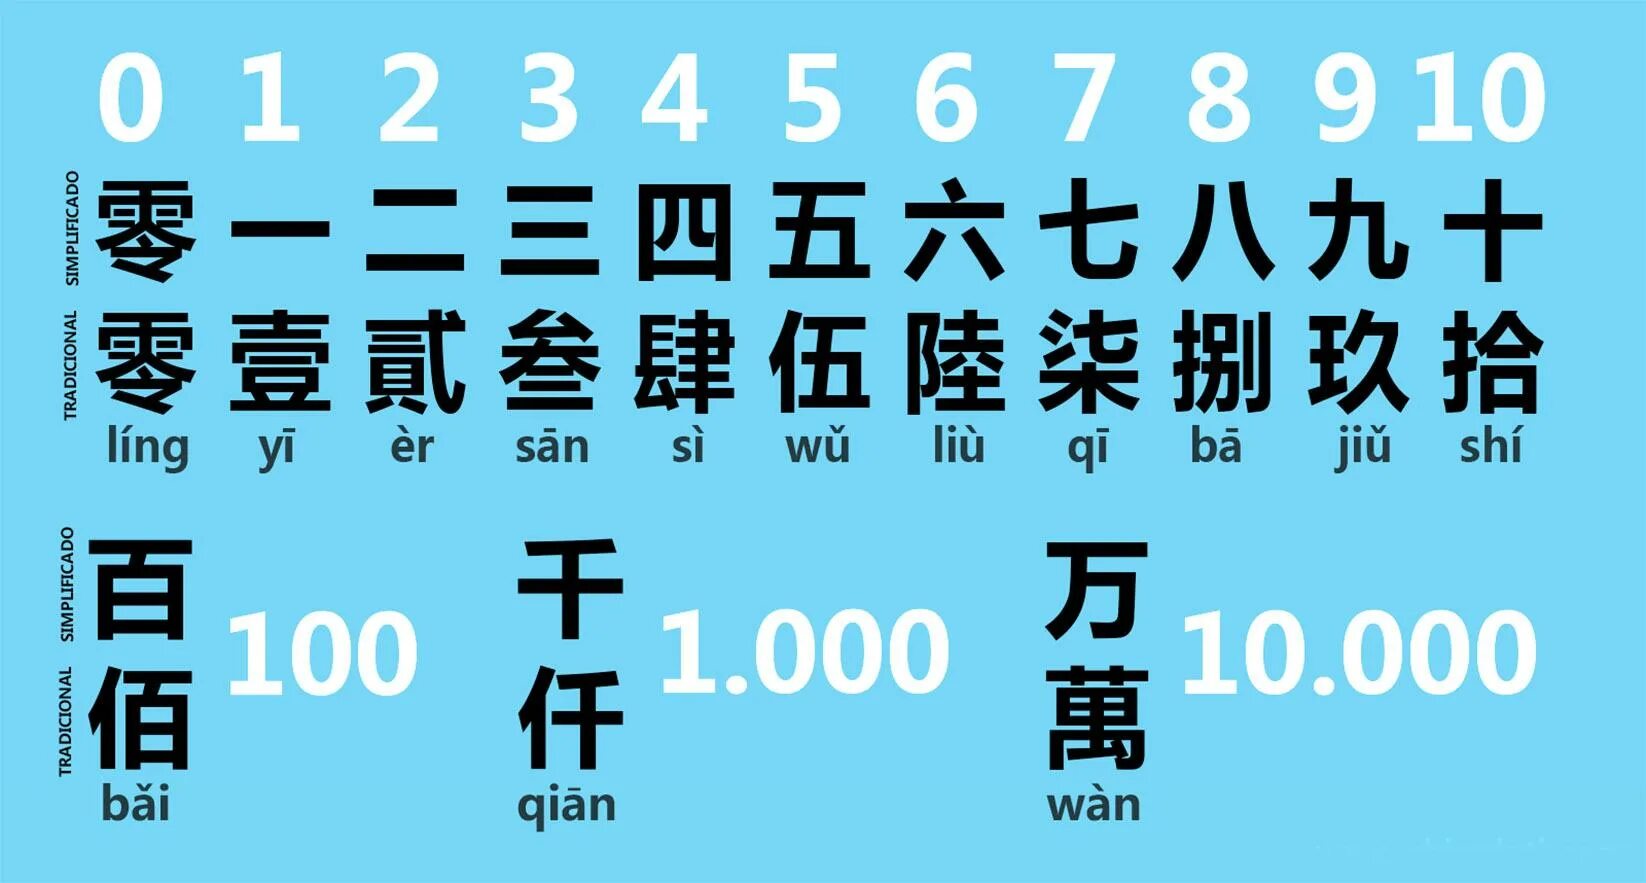 10 на китайском. Китайские цифры. Традиционные китайские цифры. Цифры на китайском языке. Китайские иероглифы числа.